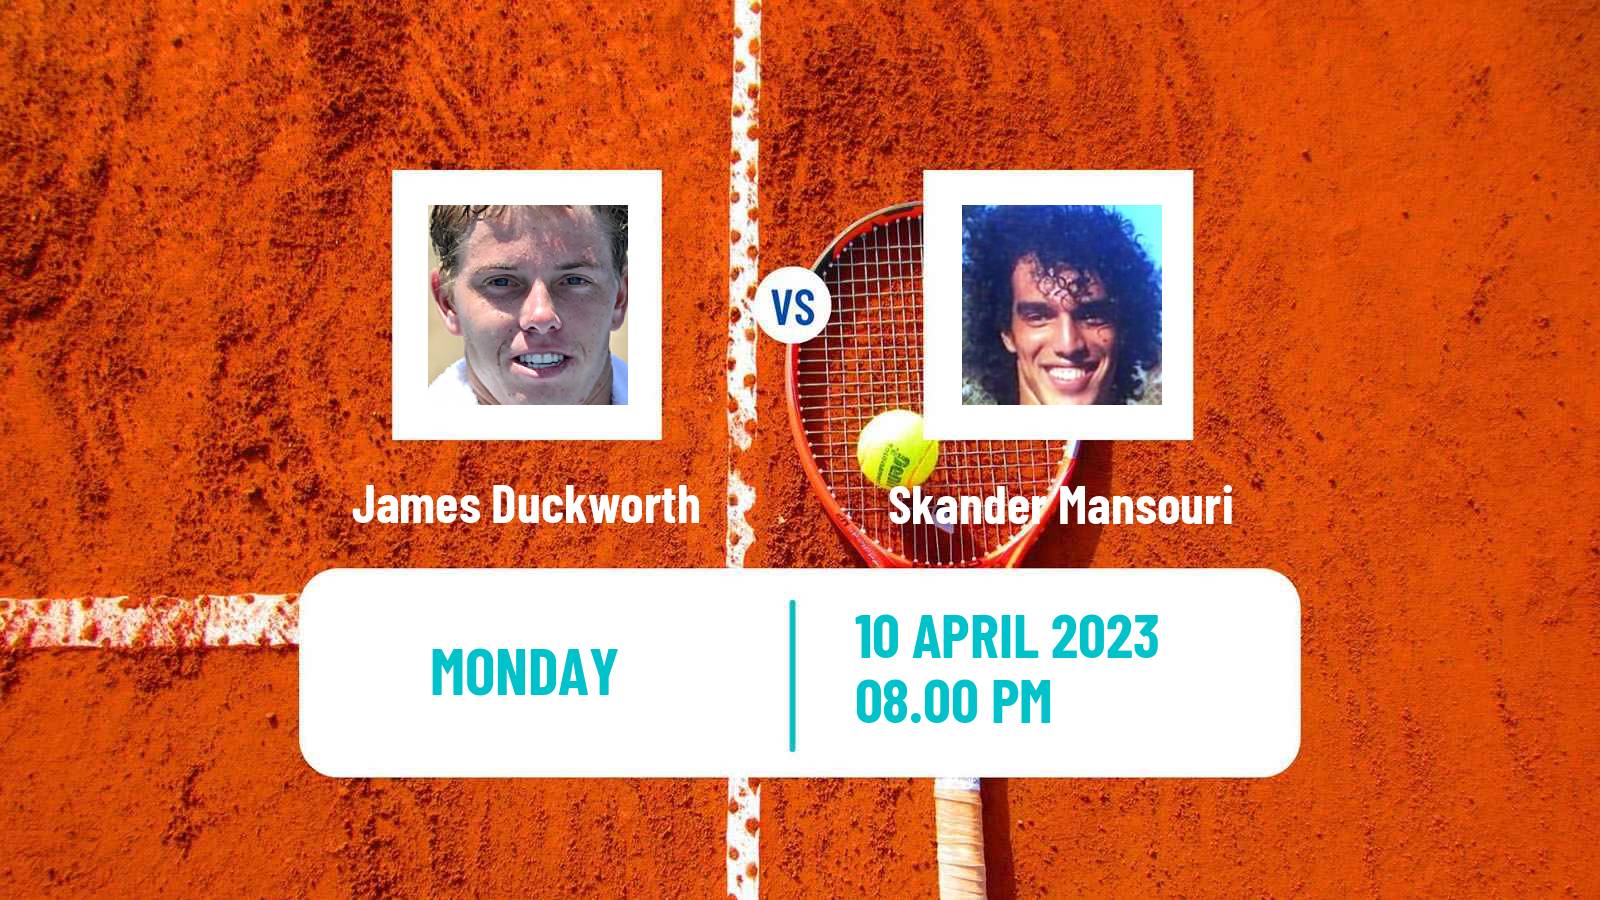 Tennis ATP Challenger James Duckworth - Skander Mansouri